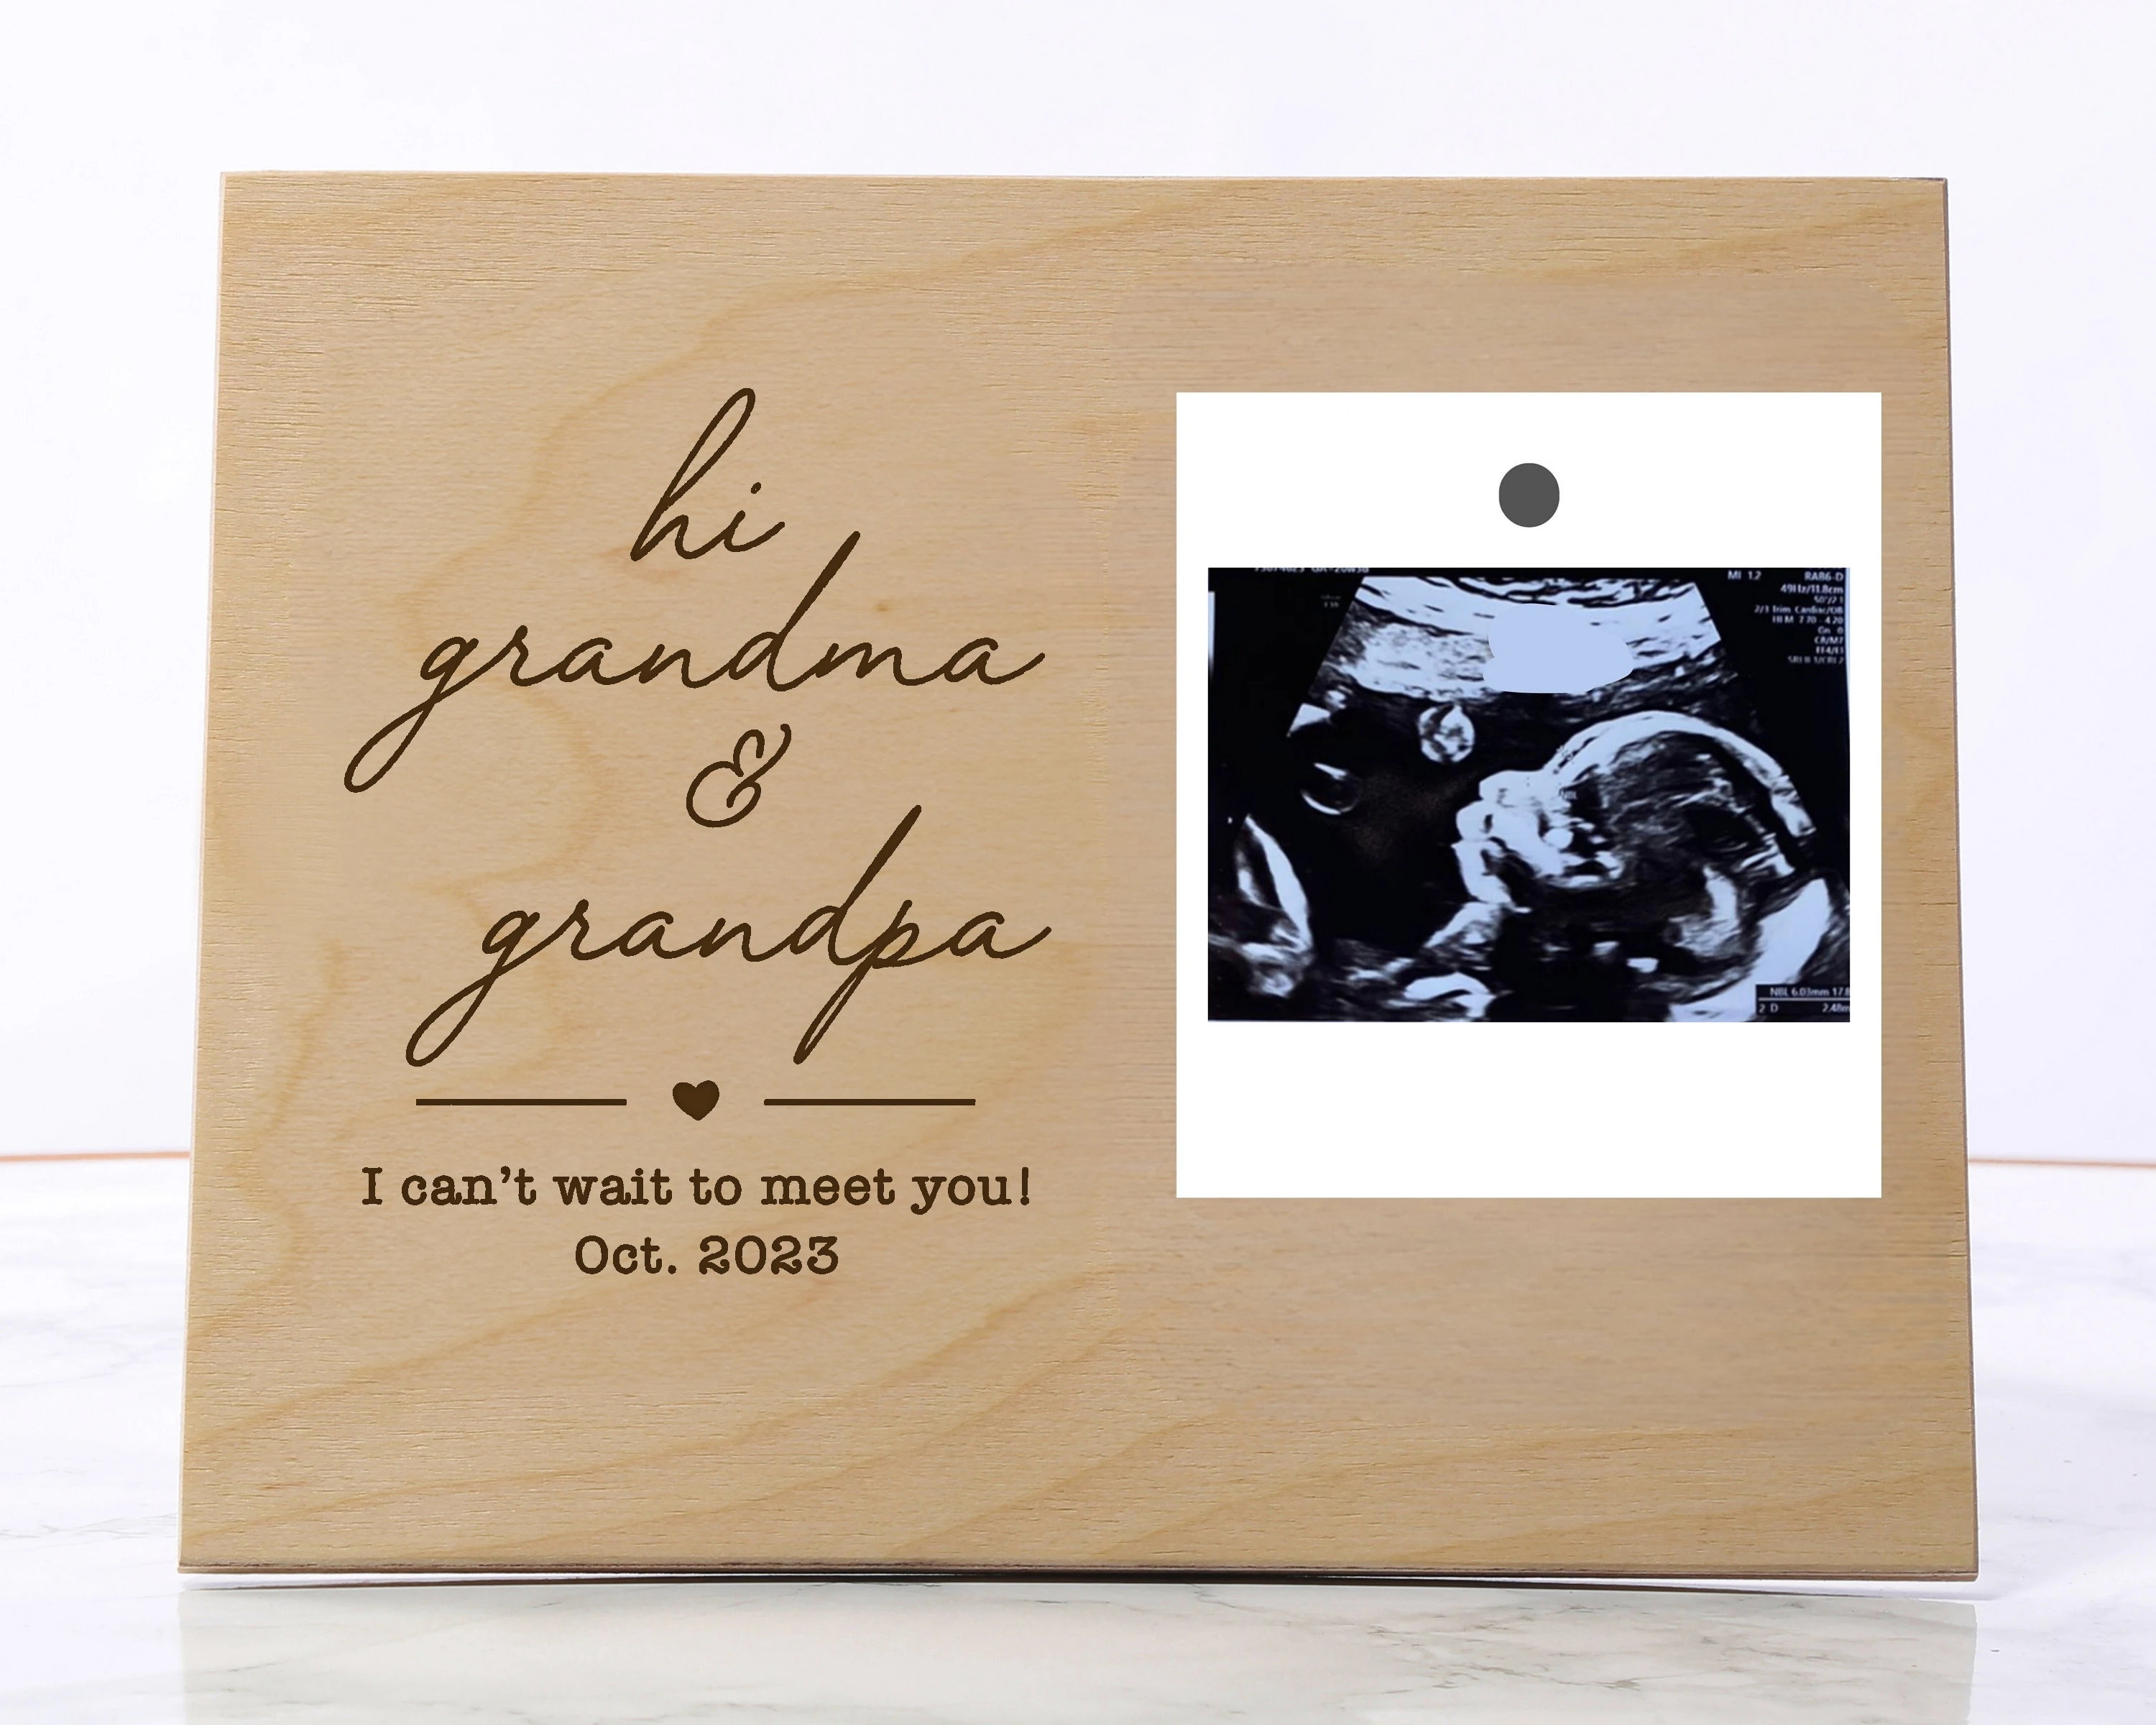 

Привет, бабушка и дедушка, фото, ультразвуковая рамка, семейная фоторамка, подарок ребенку, объявление о раскрытии идеи, бабушки и дедушки